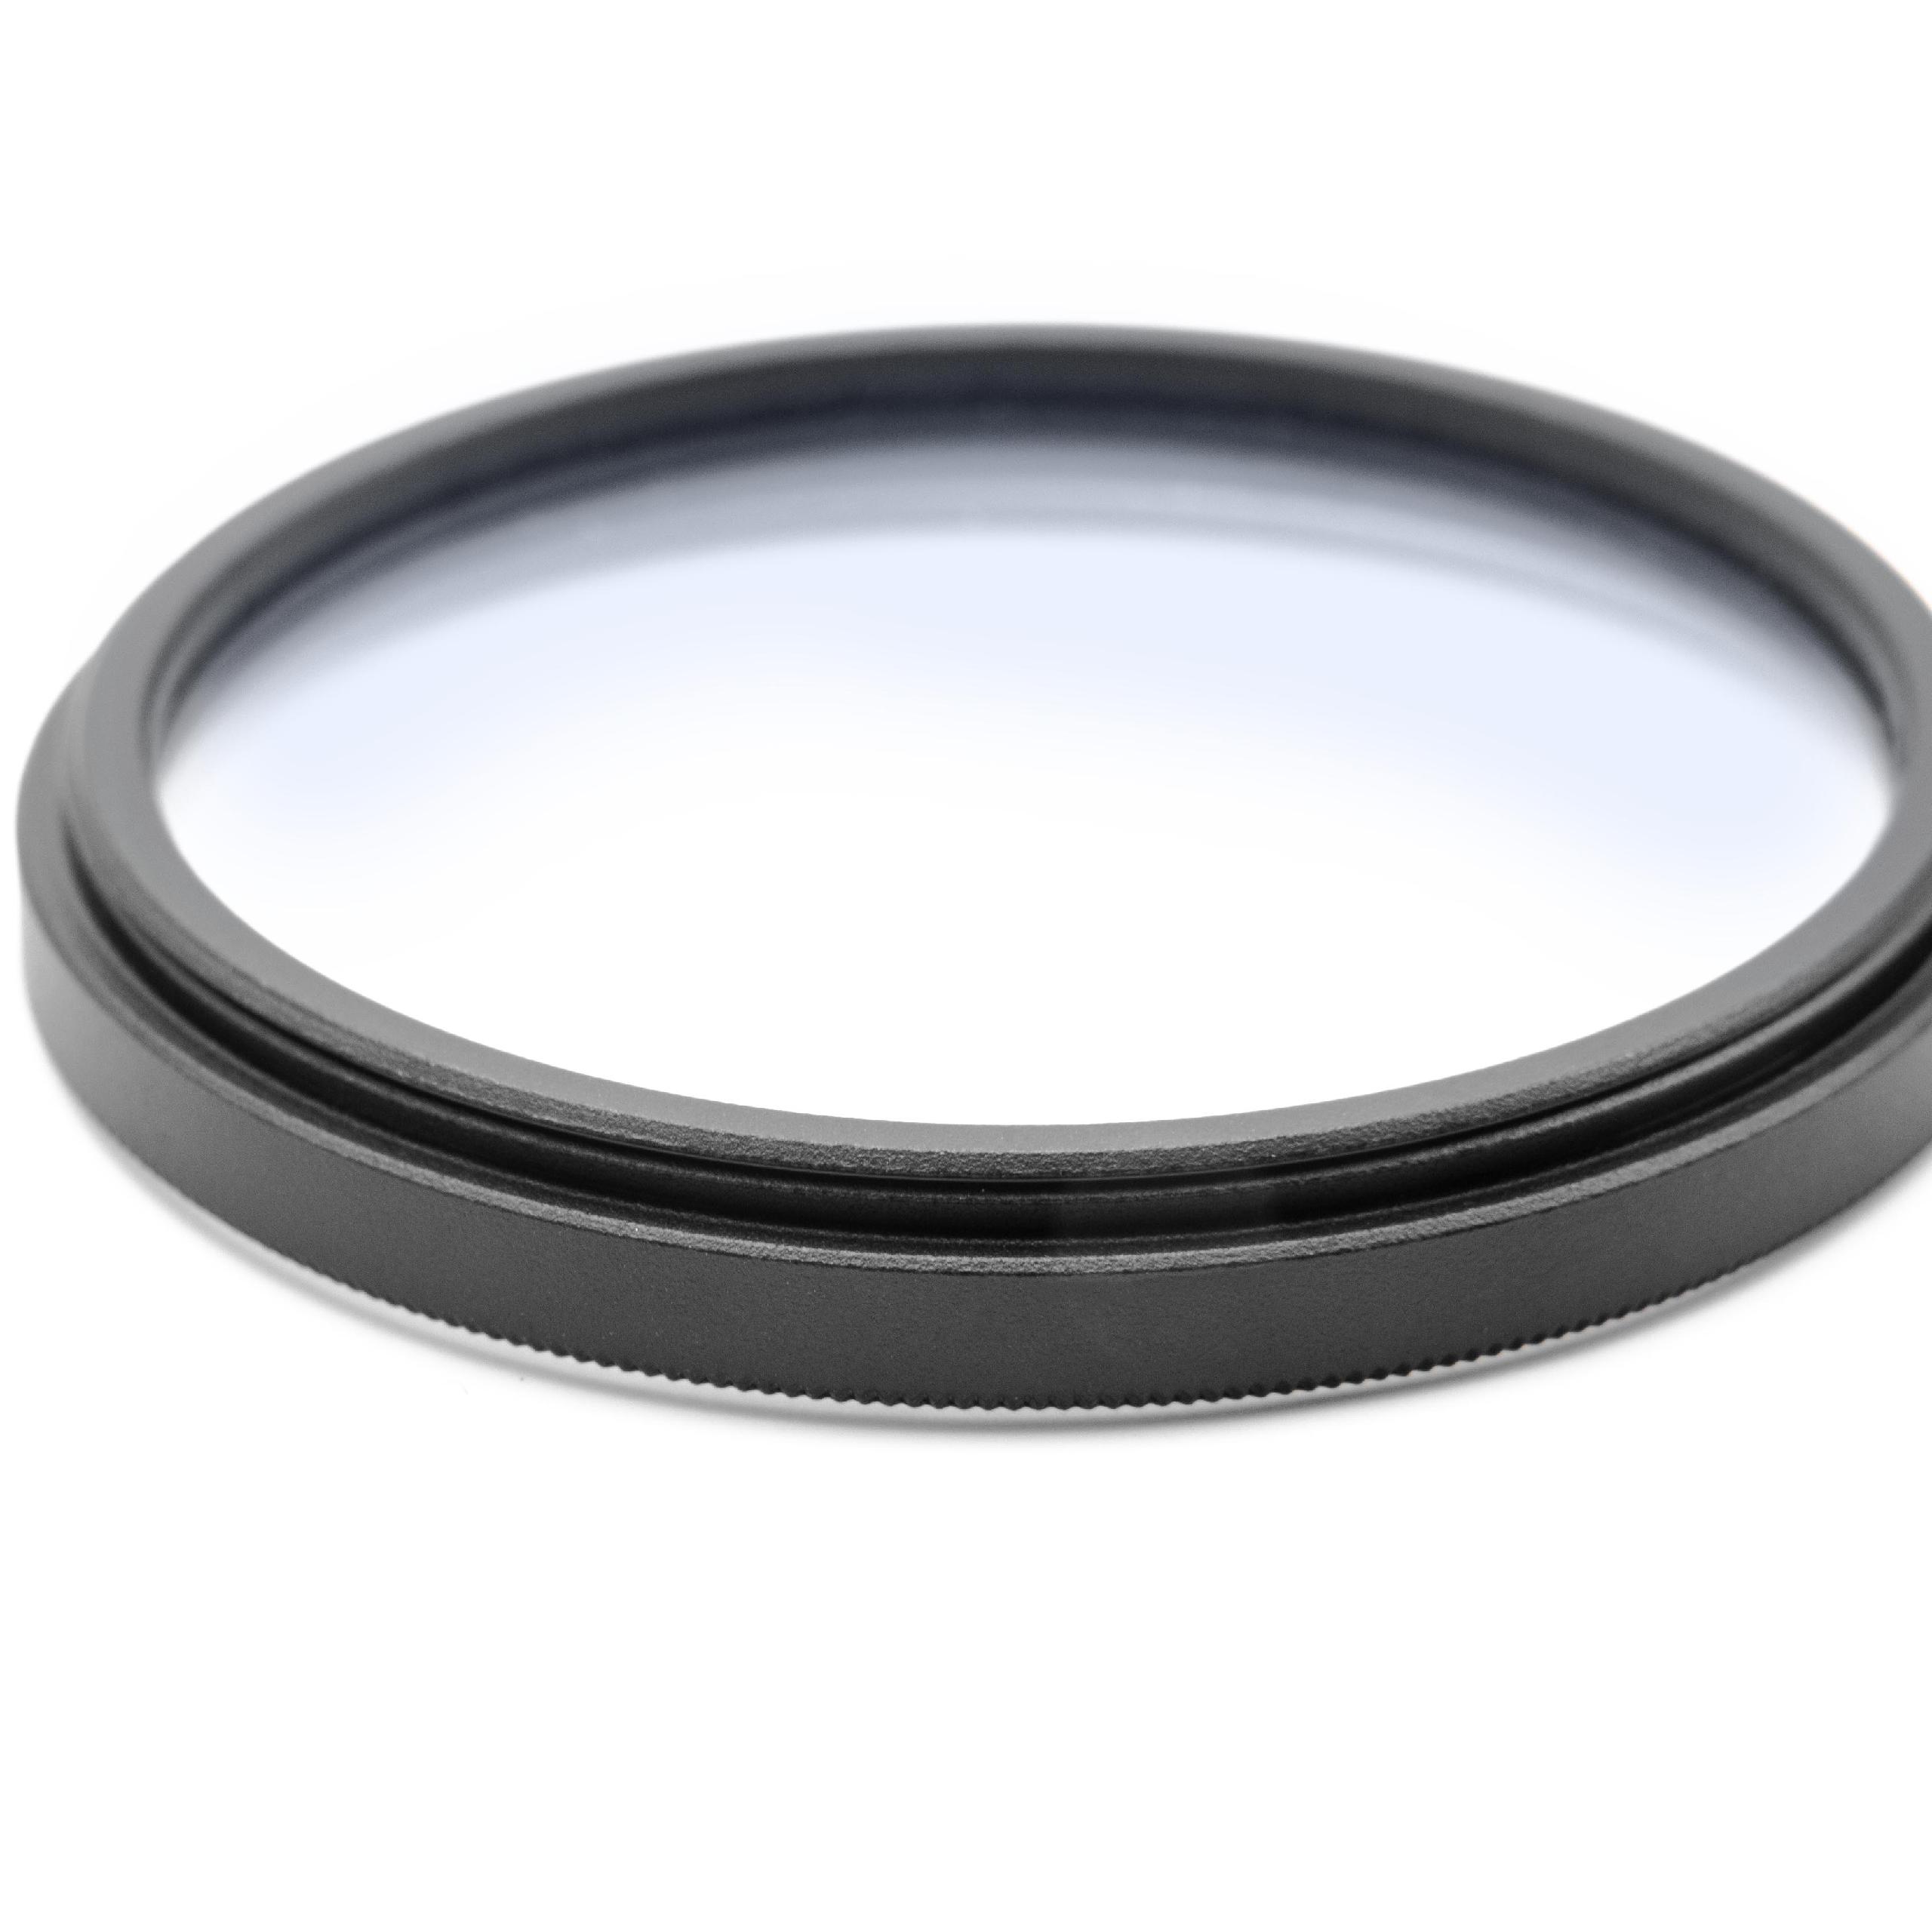 Weichzeichner Filter passend für Kameras & Objektive mit 49mm Filtergewinde - Softfilter